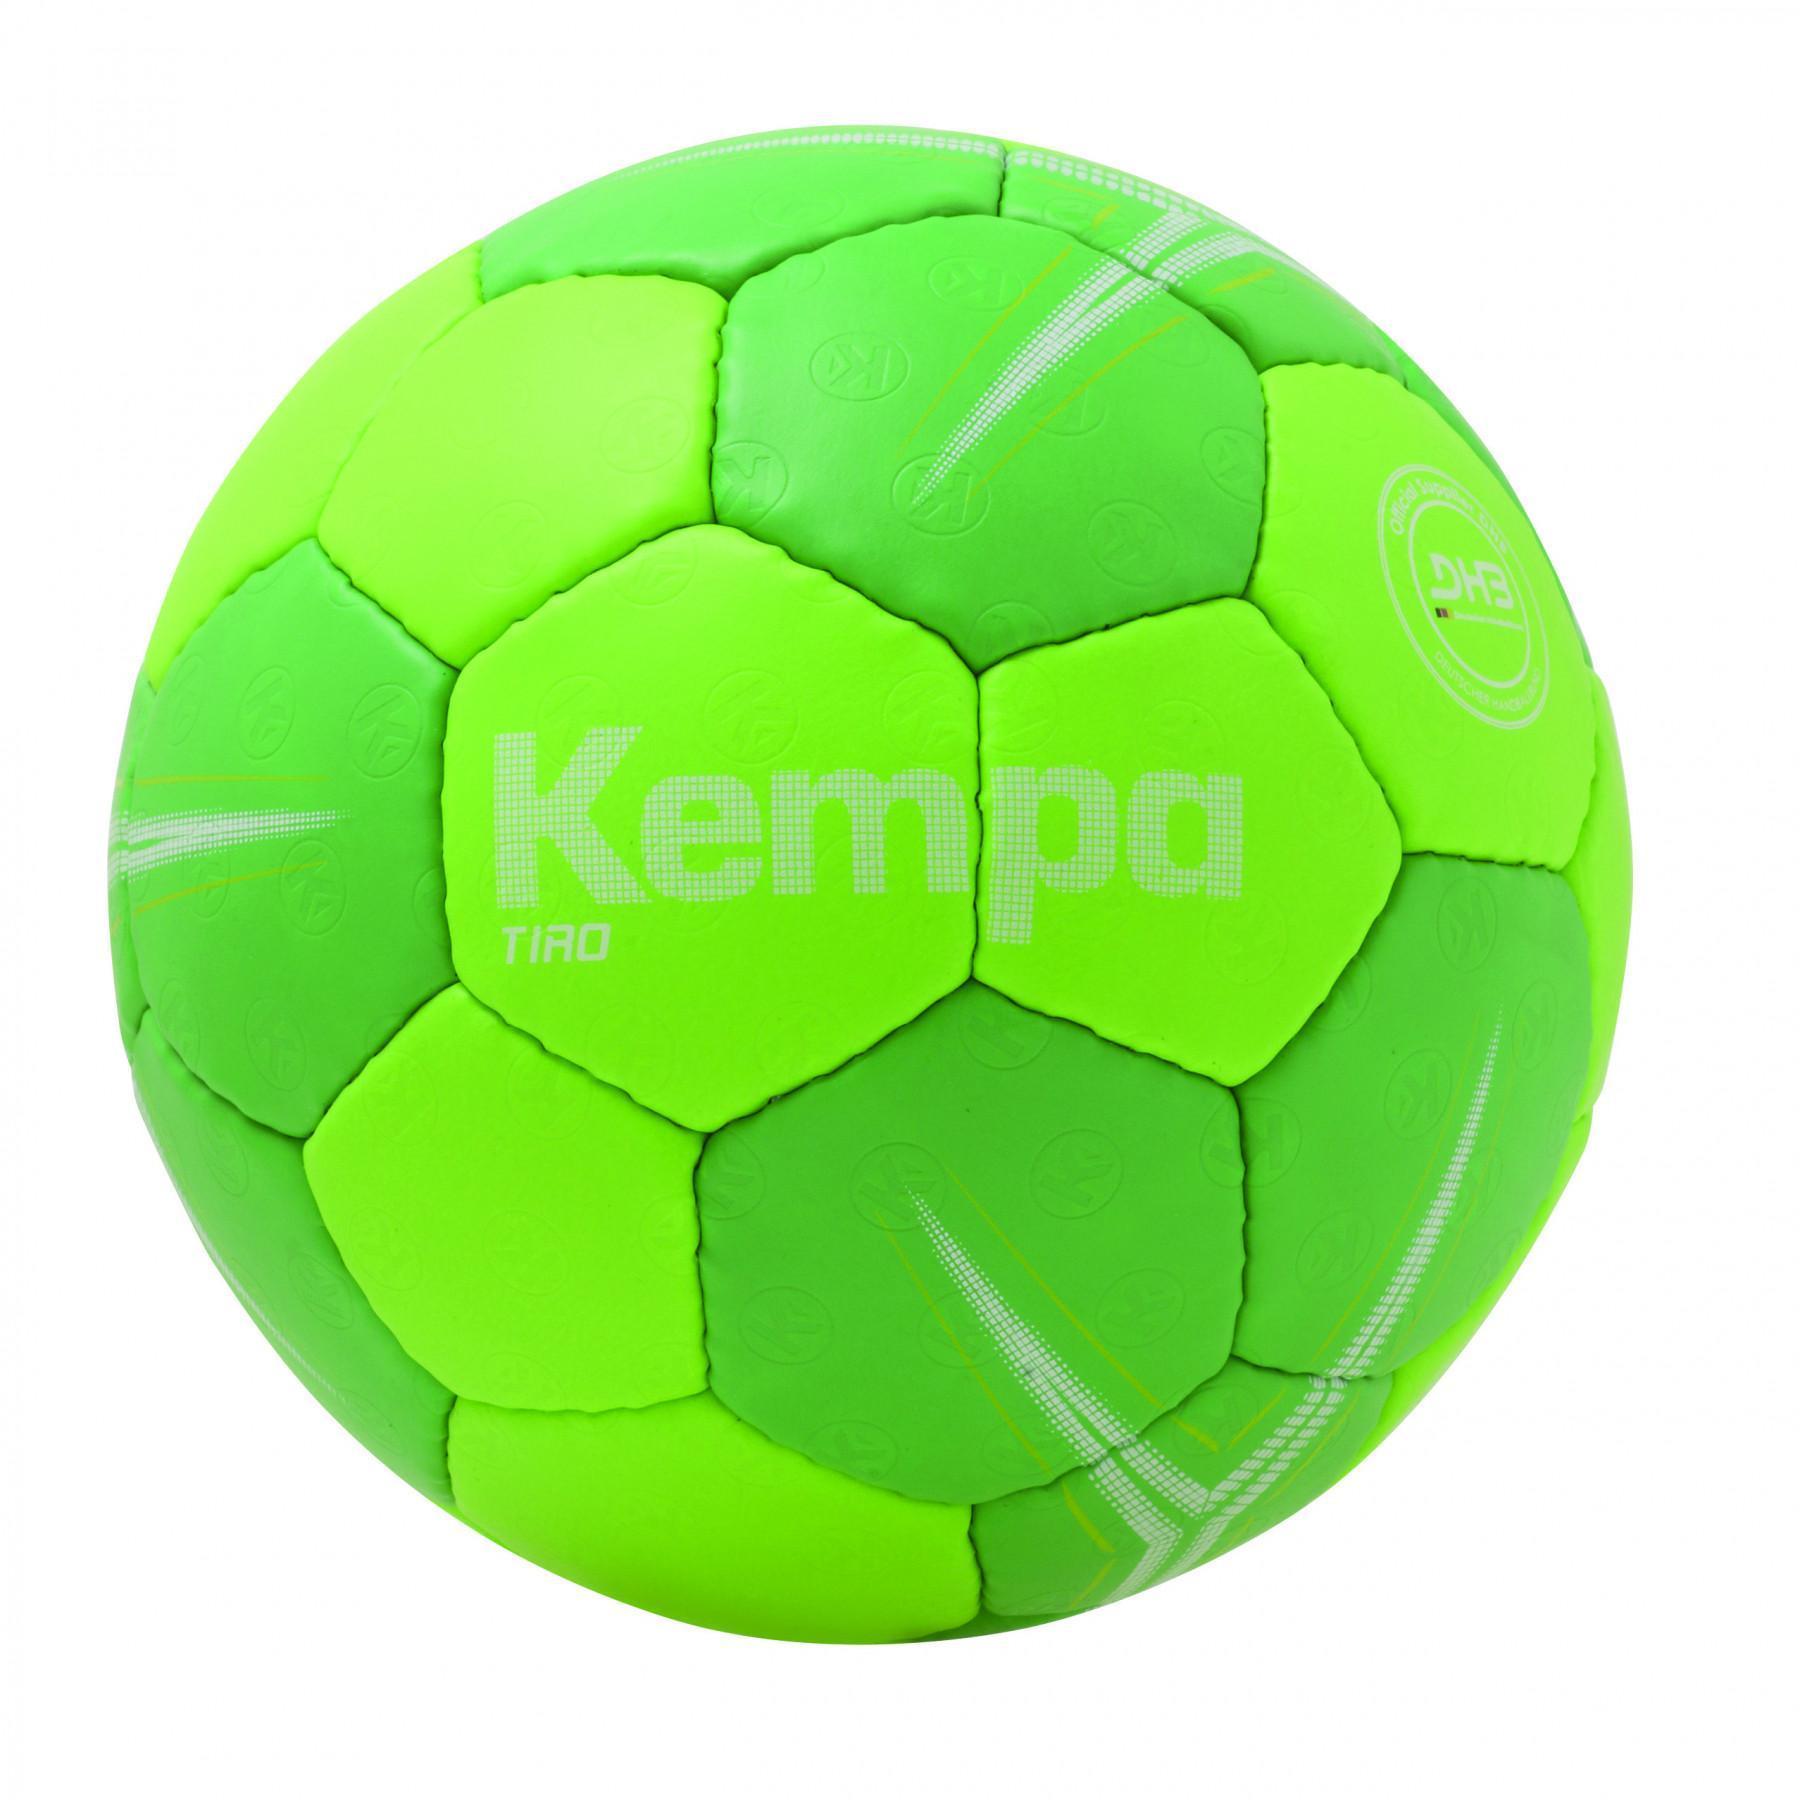 Ballong Kempa Tiro